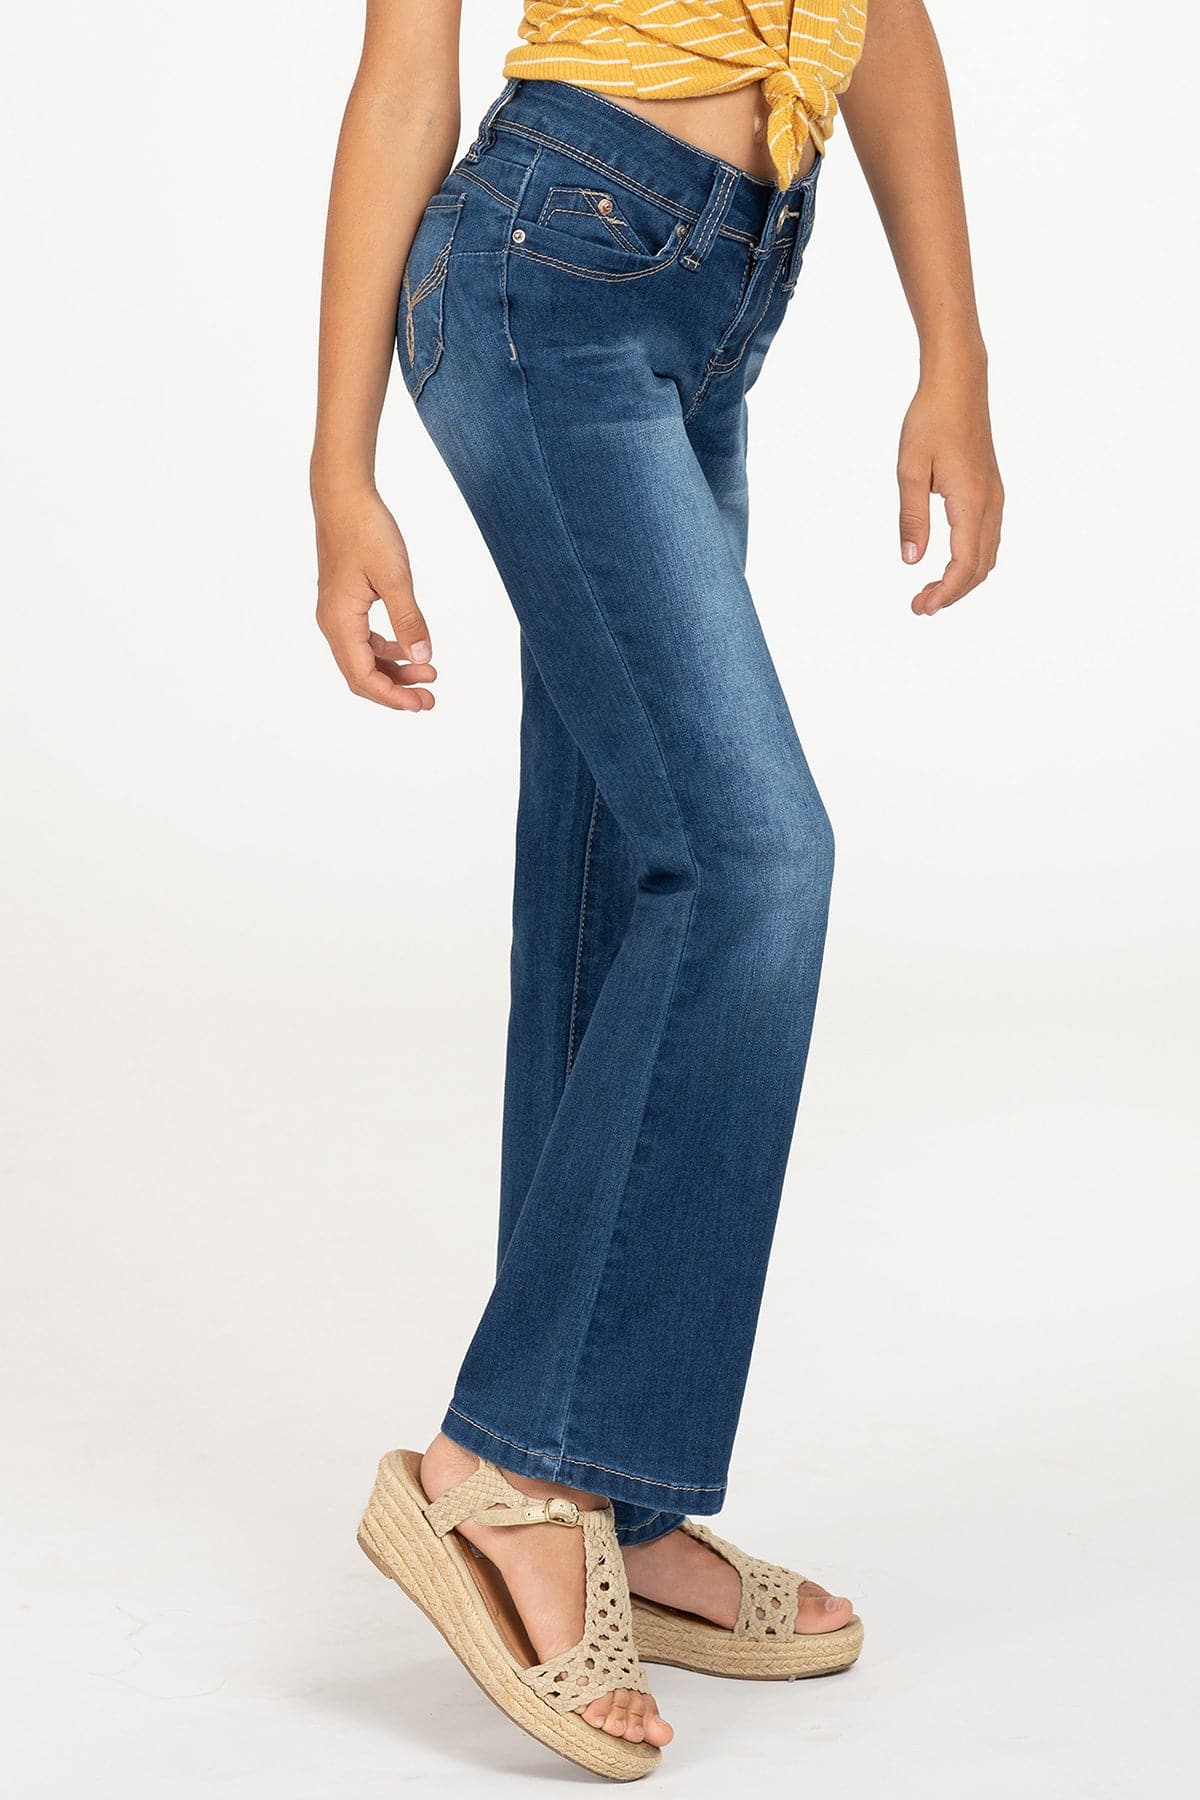 Girls WannaBettaFit Bootcut Jeans